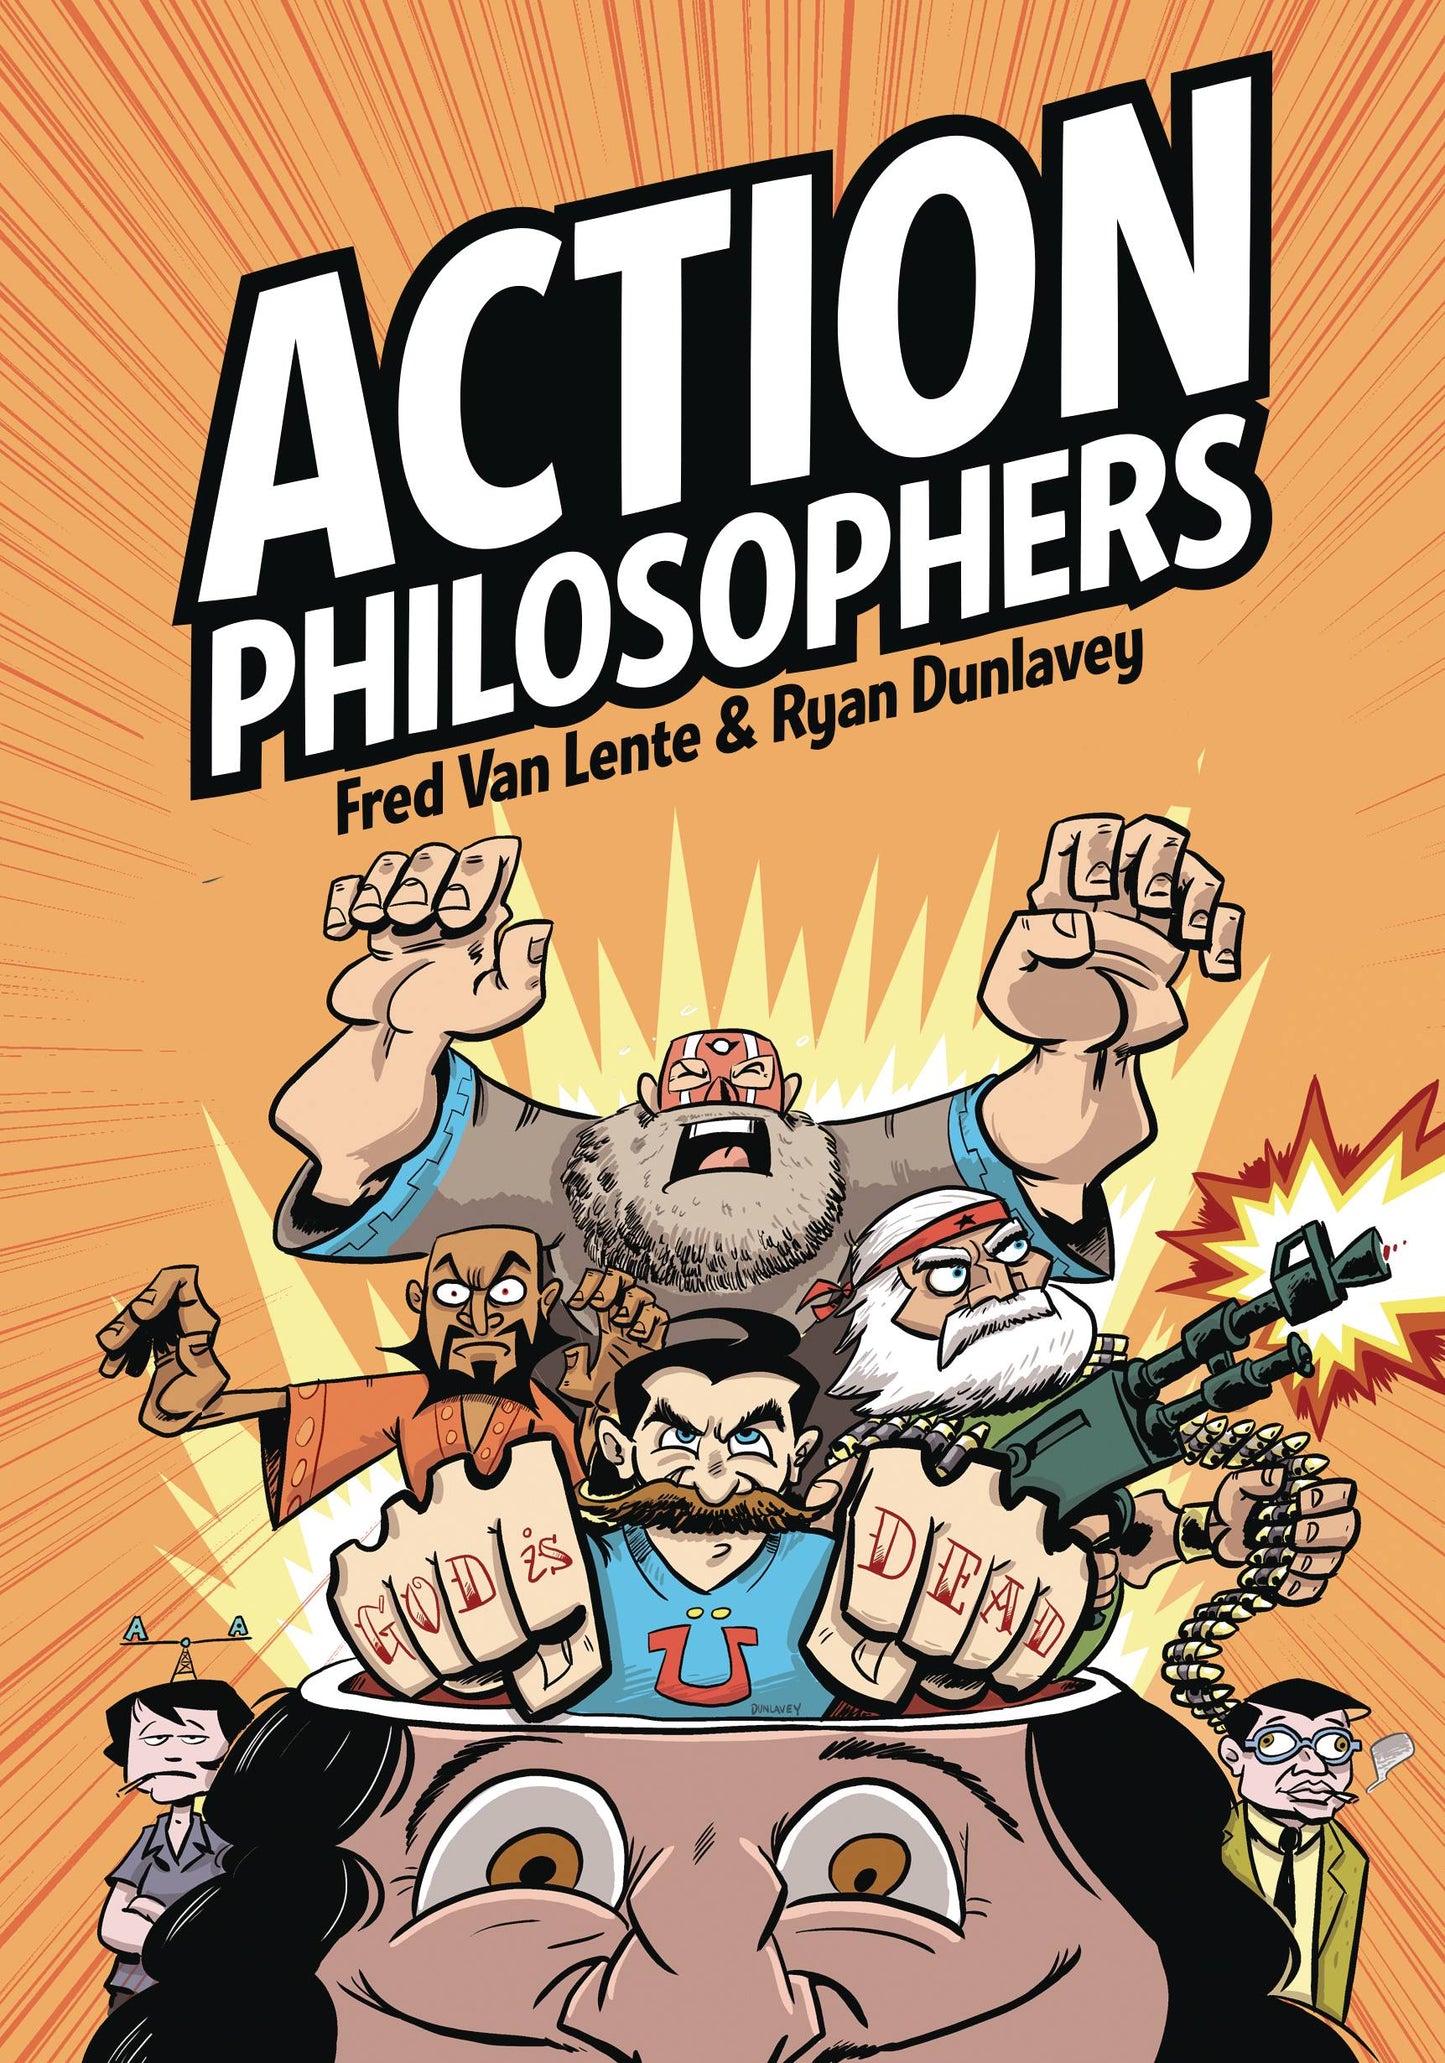 The One Stop Shop Comics & Games Action Philosophers Gn Vol 01 (C: 0-1-0) (12/14/2022) ROCKETSHIP ENTERTAINMENT